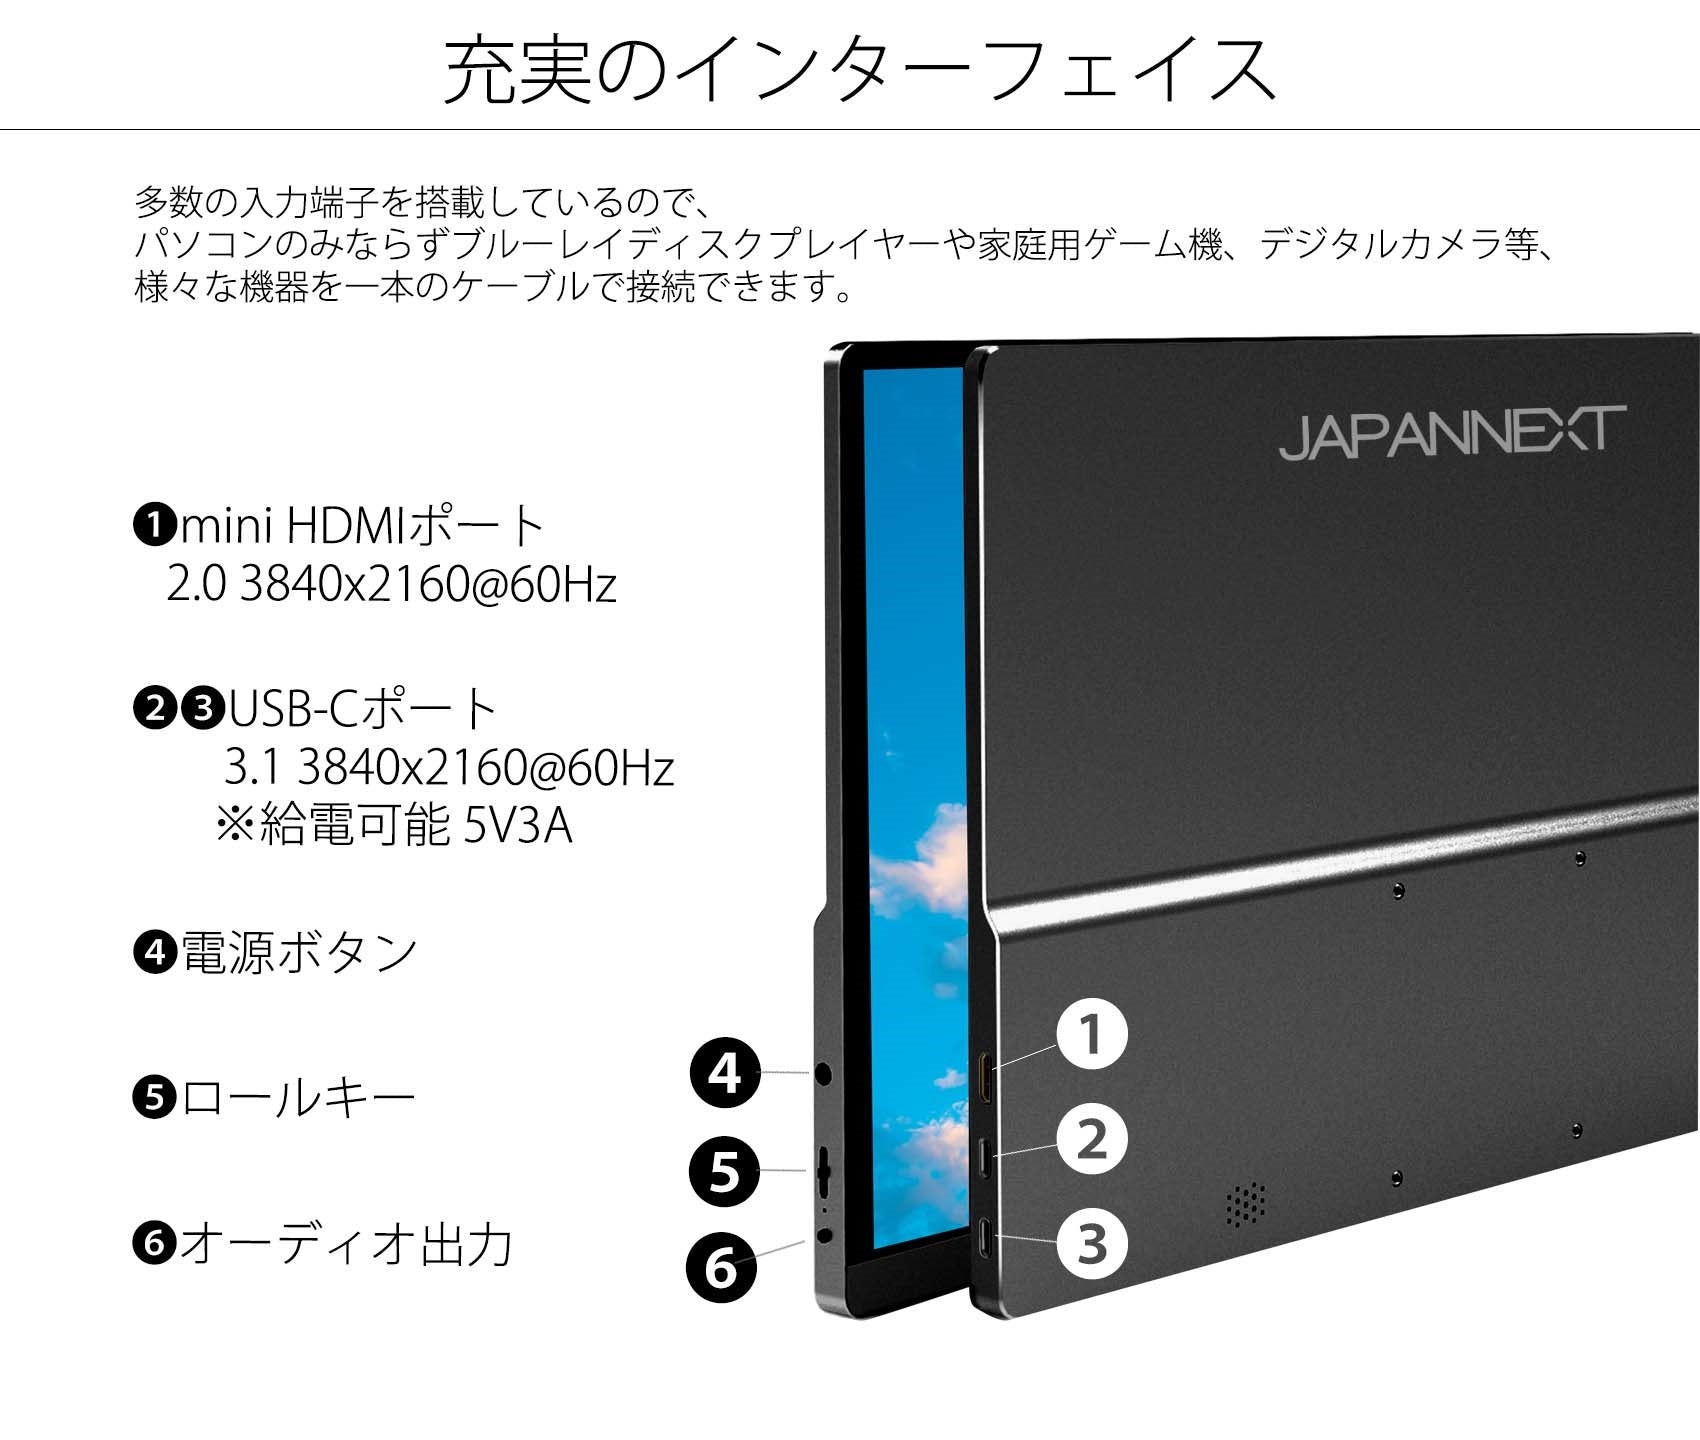 JAPANNEXT JN-MD-IPS1562UHDR-T 15.6型 4Kモバイルモニター タッチ対応